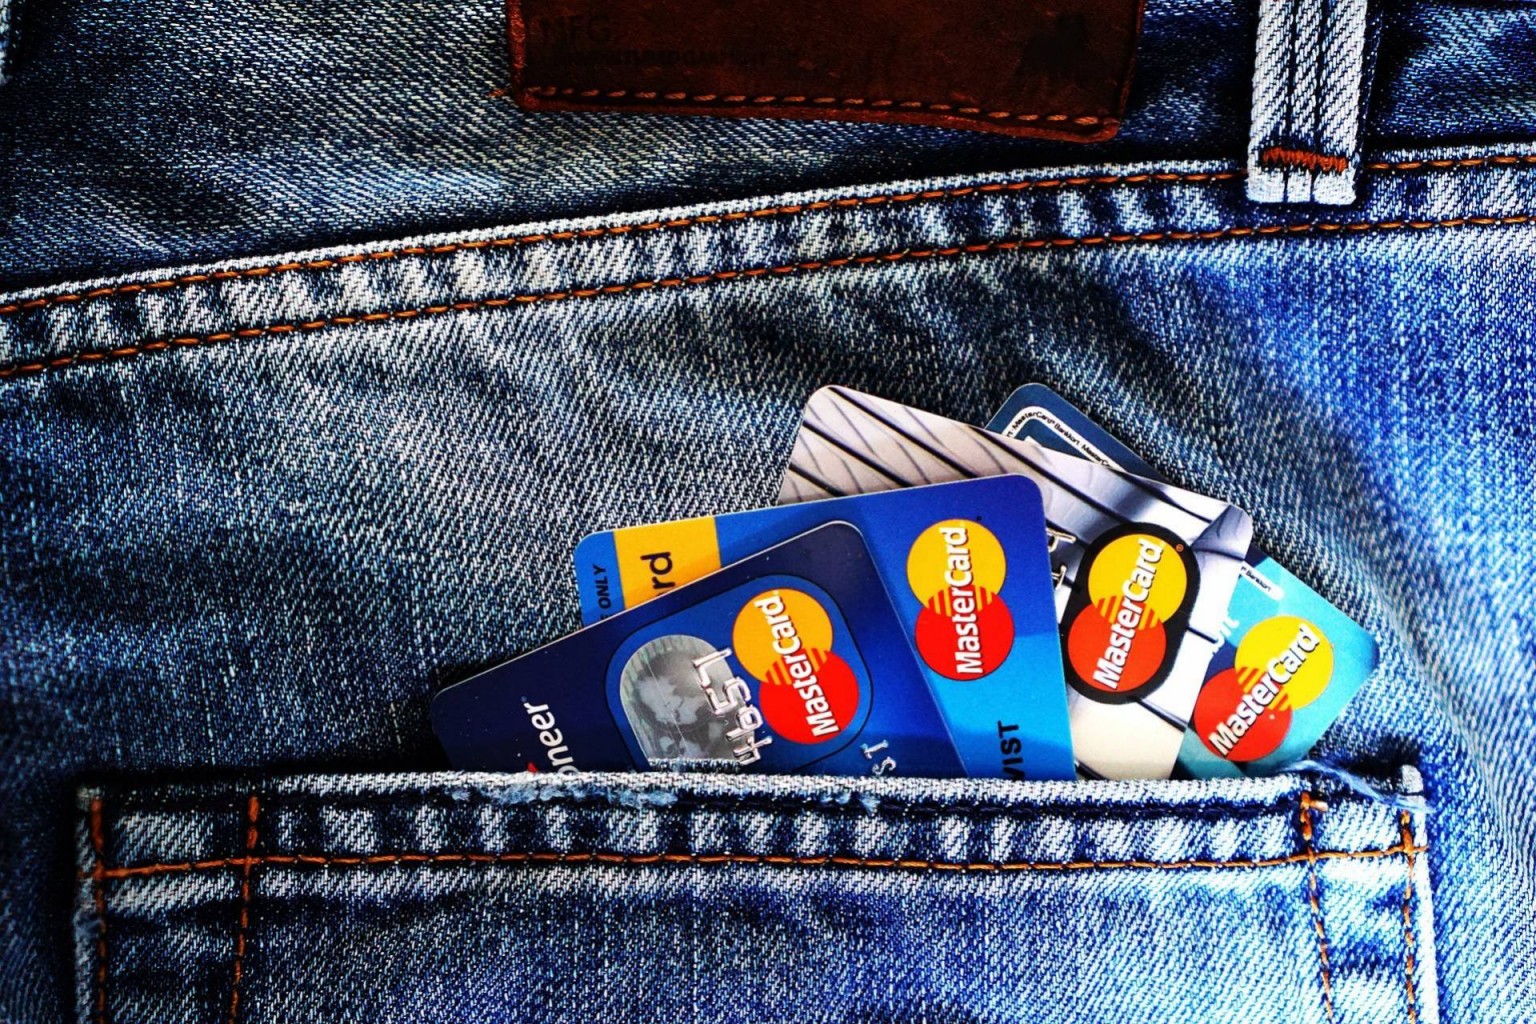 Proyecto de ley en competencia en tarifas de tarjetas de crédito ahorraría miles de millones a consumidores